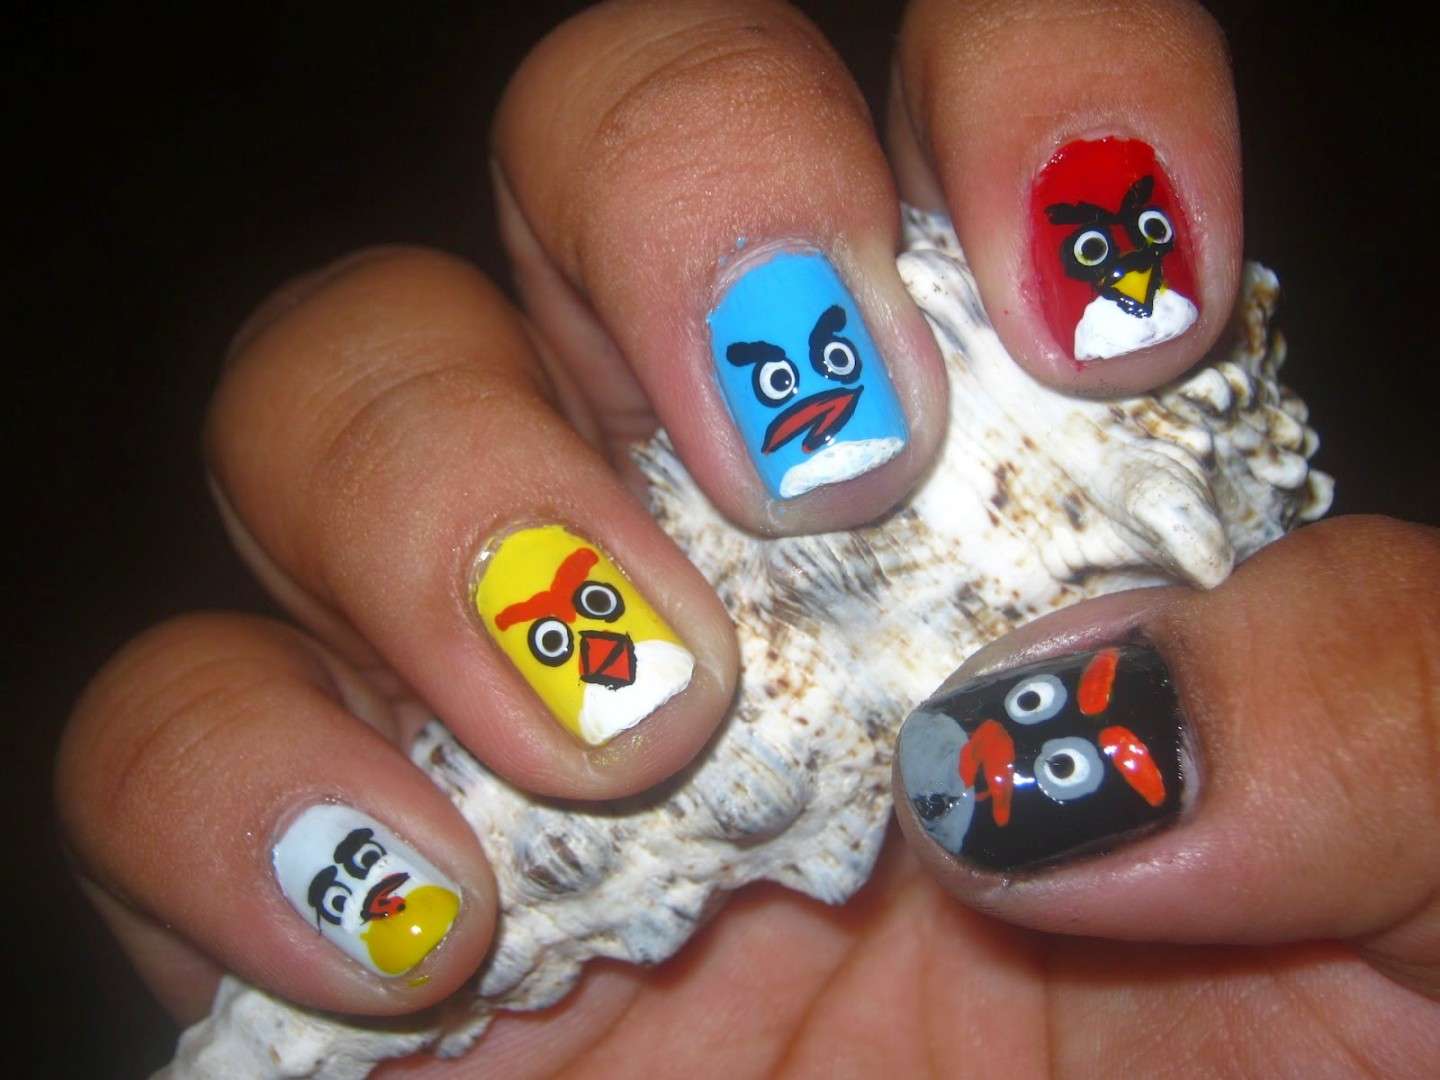 Cinque colori diversi per la nail art di Angry Birds